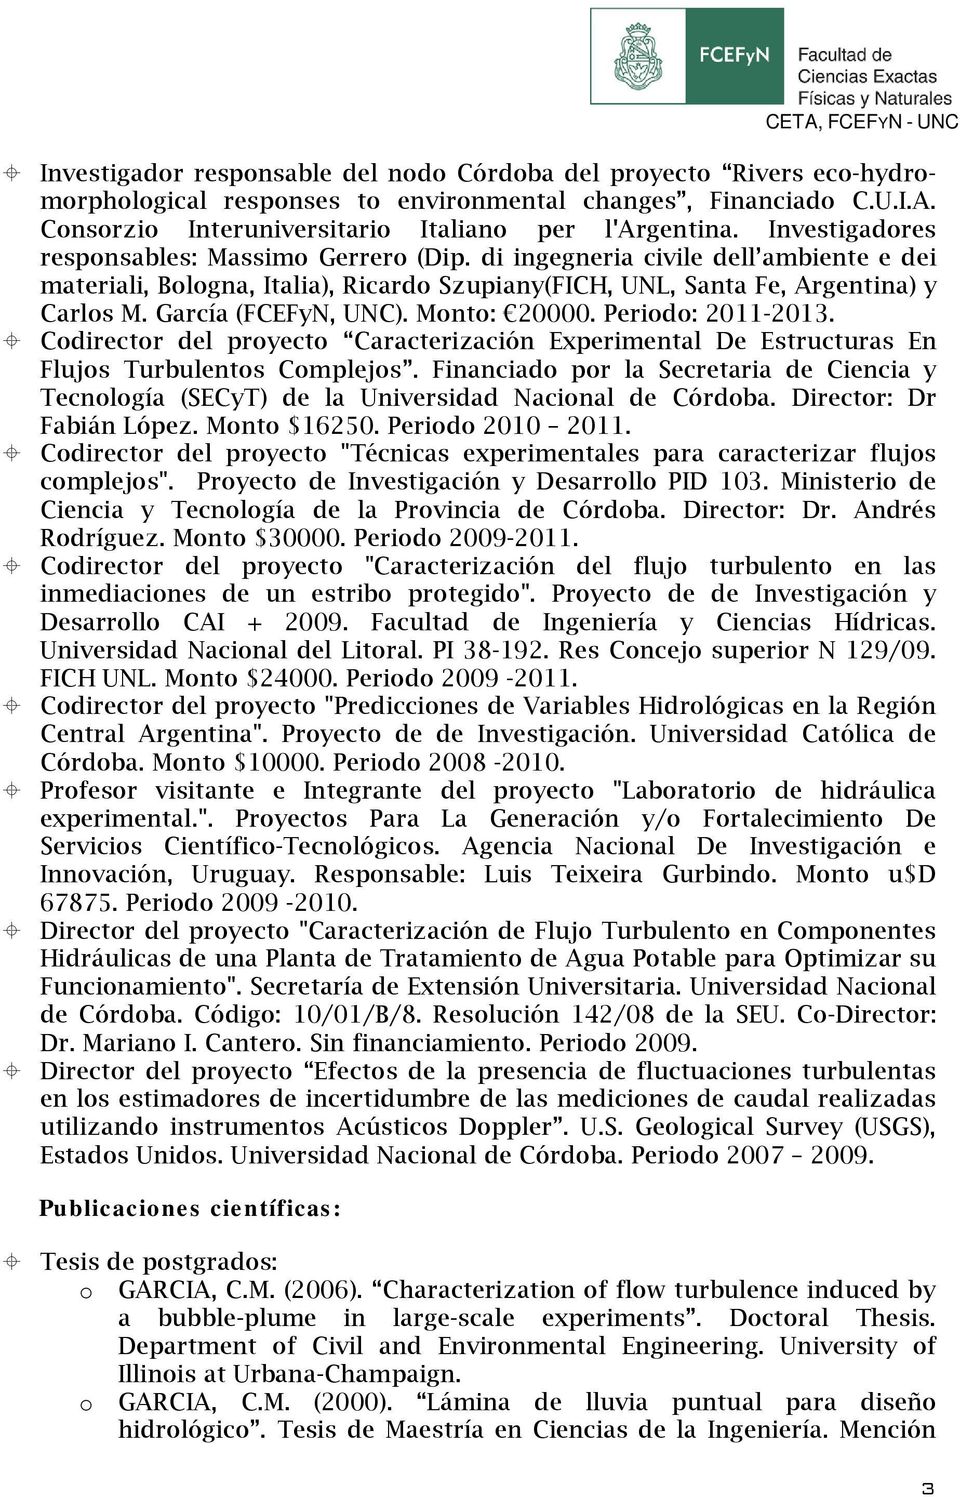 Mnt: 20000. Perid: 2011-2013. Cdirectr del pryect Caracterización Experimental De Estructuras En Flujs Turbulents Cmplejs.